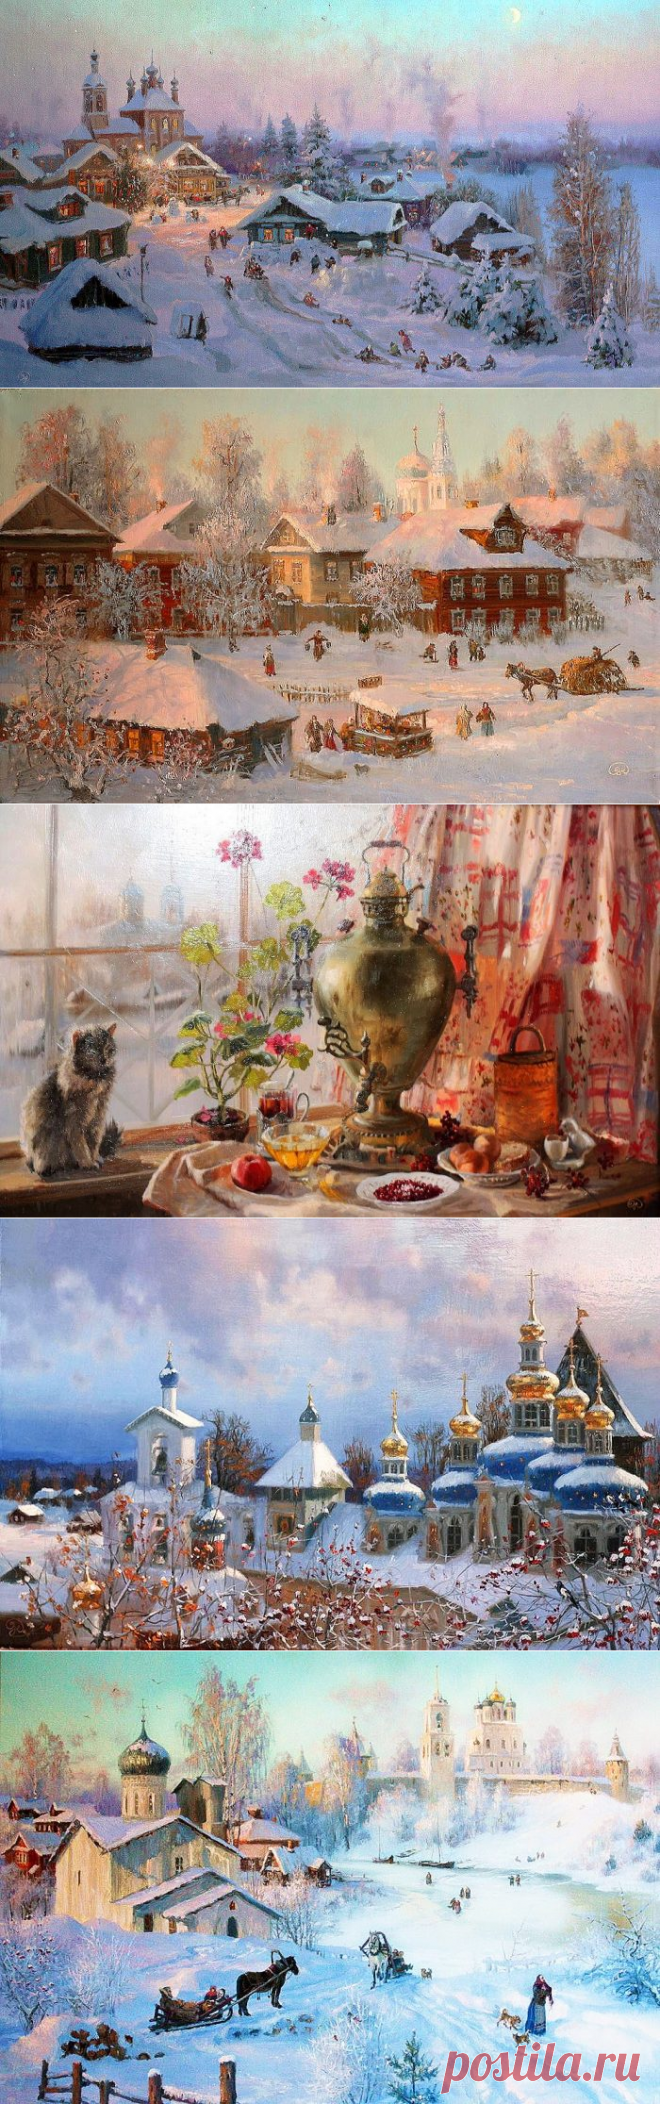 Зимние пейзажи Владимира Жданова больше похожи на красивую сказку, хотя ничего сказочного в них нет. Абсолютнейший реализм. Может быть, только краски чуть-чуть живее и ярче.